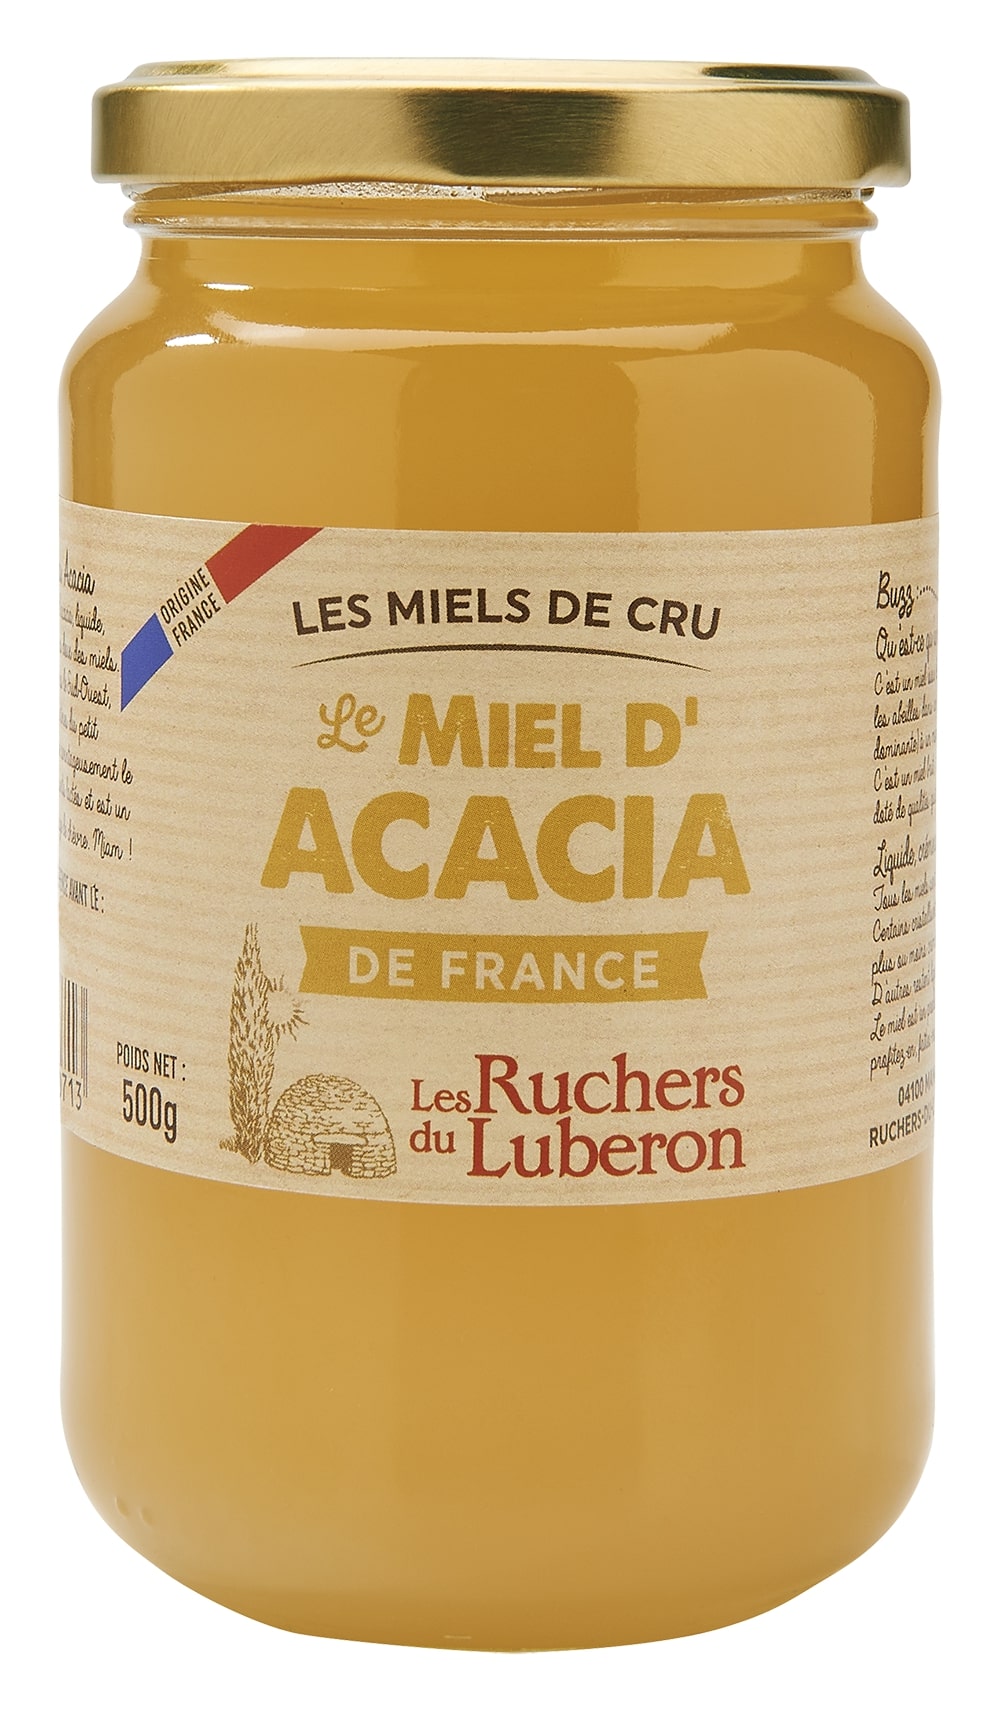 miel d'acacia de France